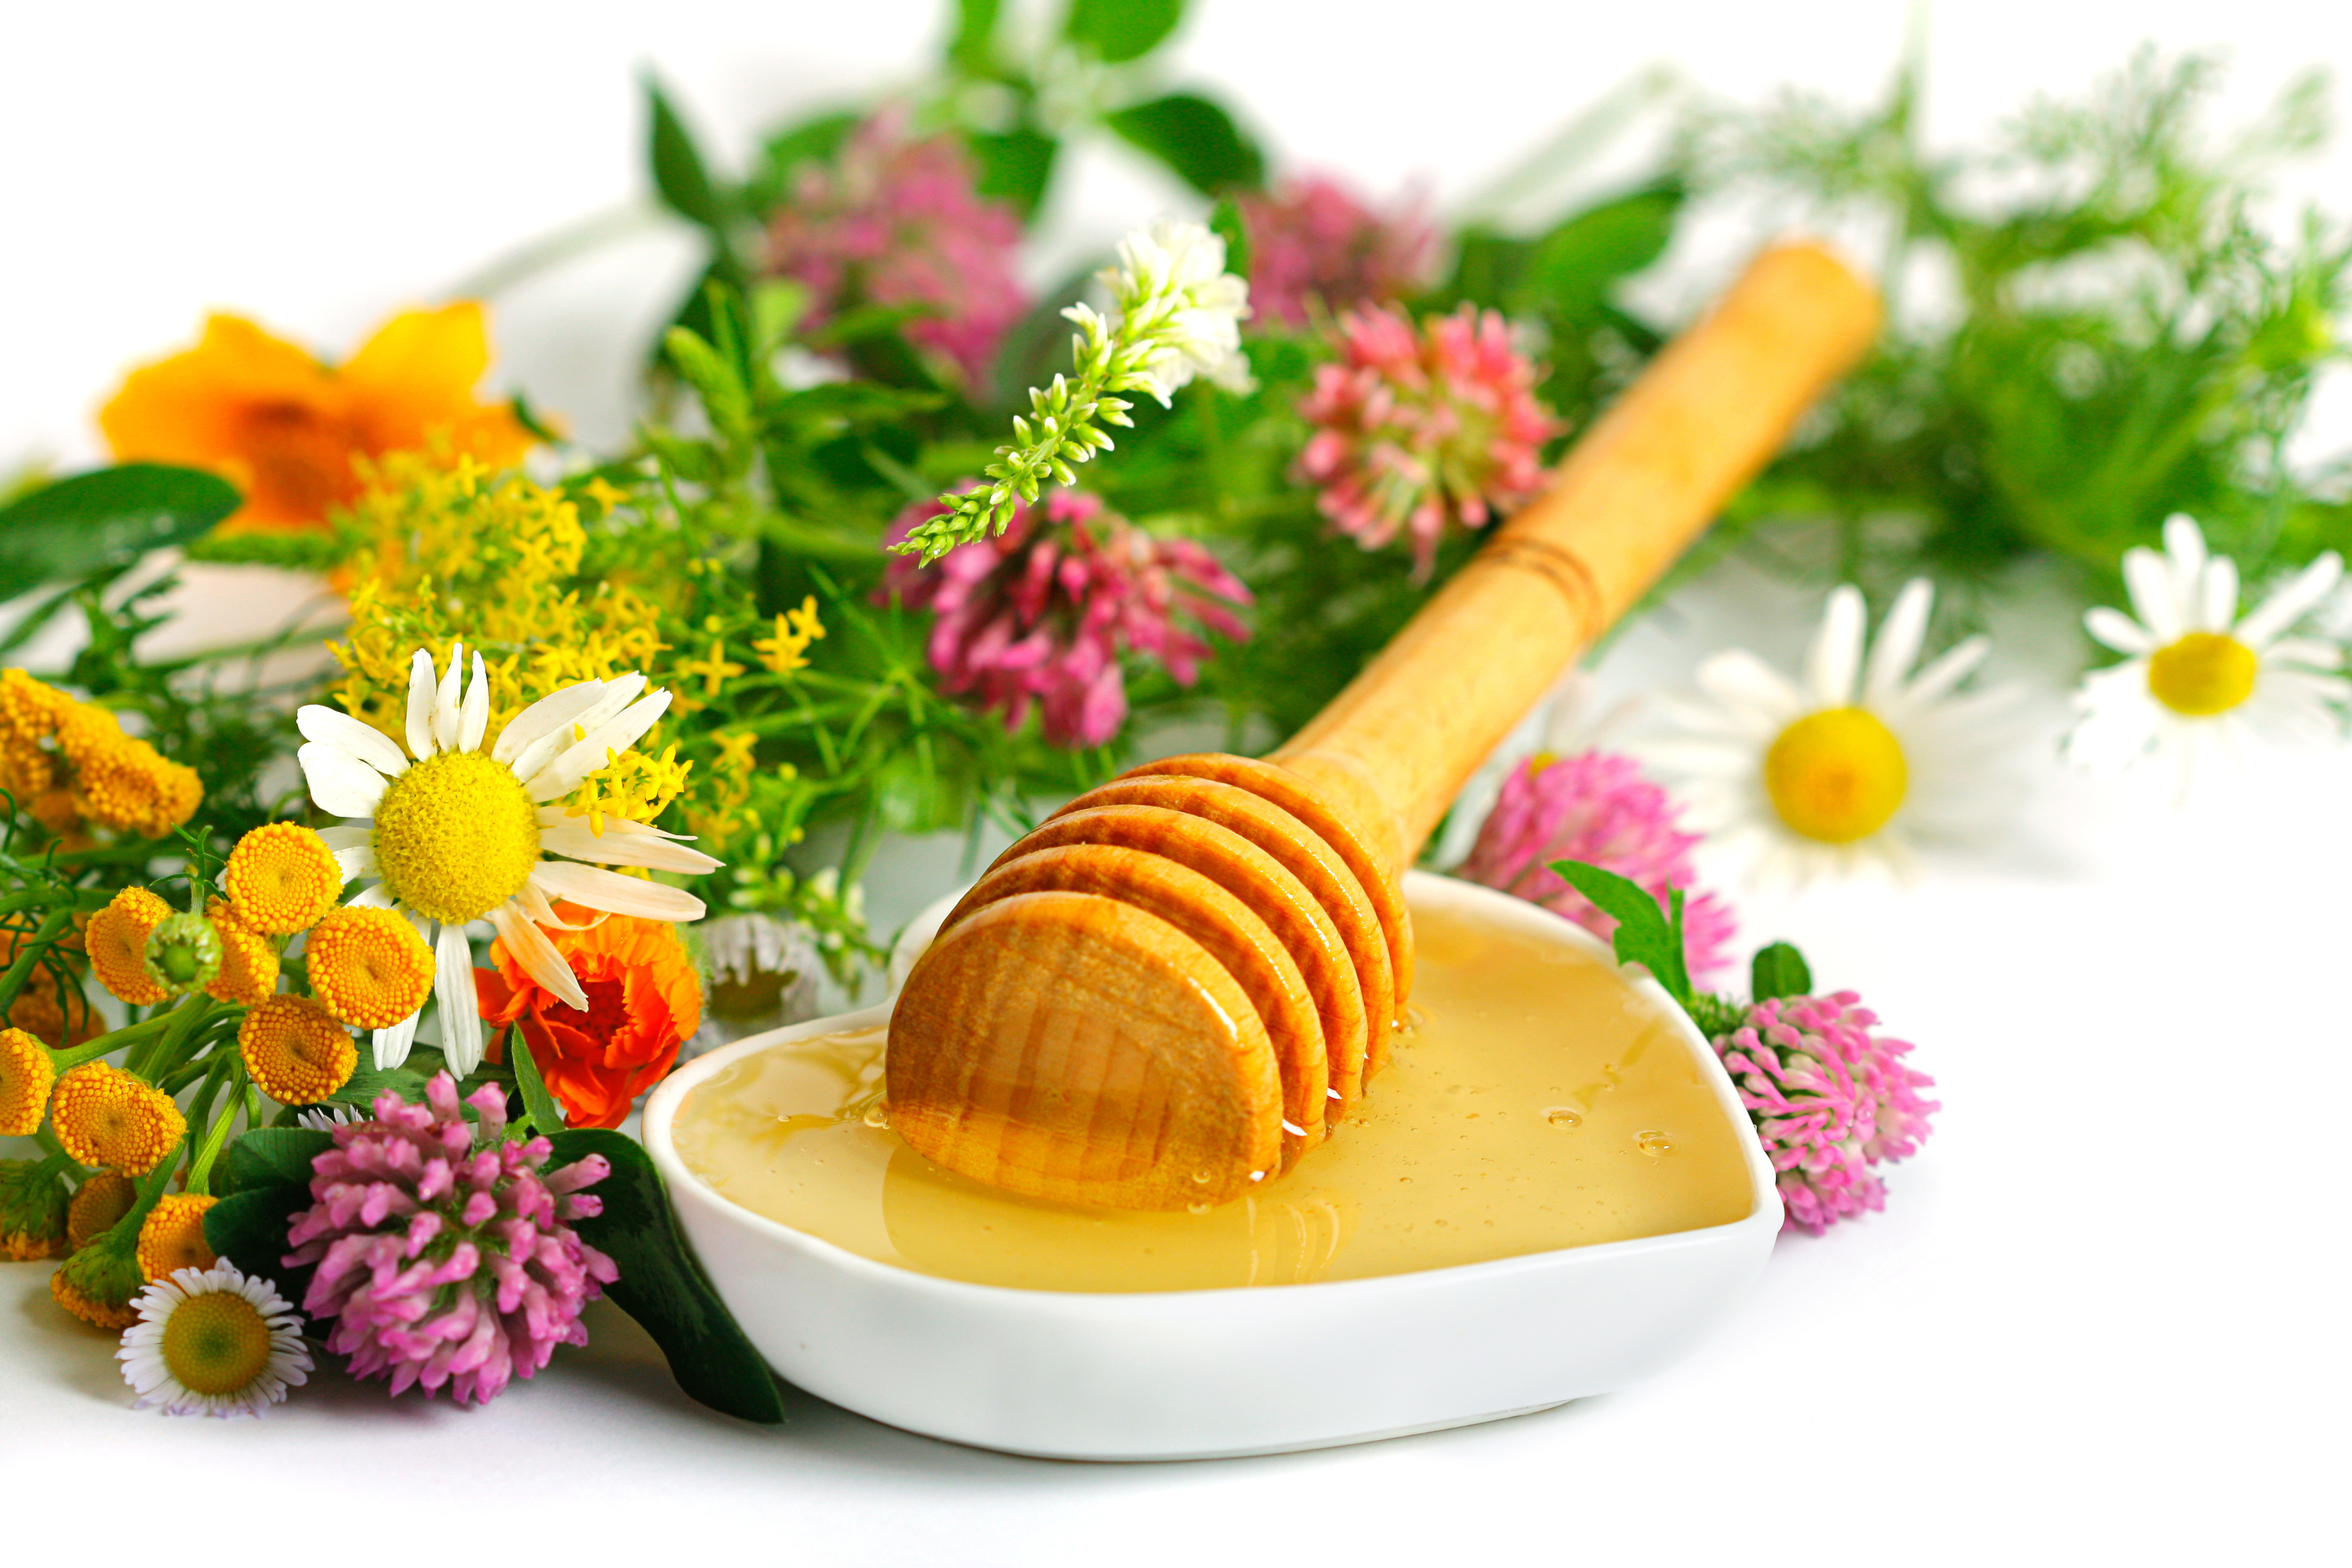 honey wallpaper,food,dish,ingredient,cuisine,parsley